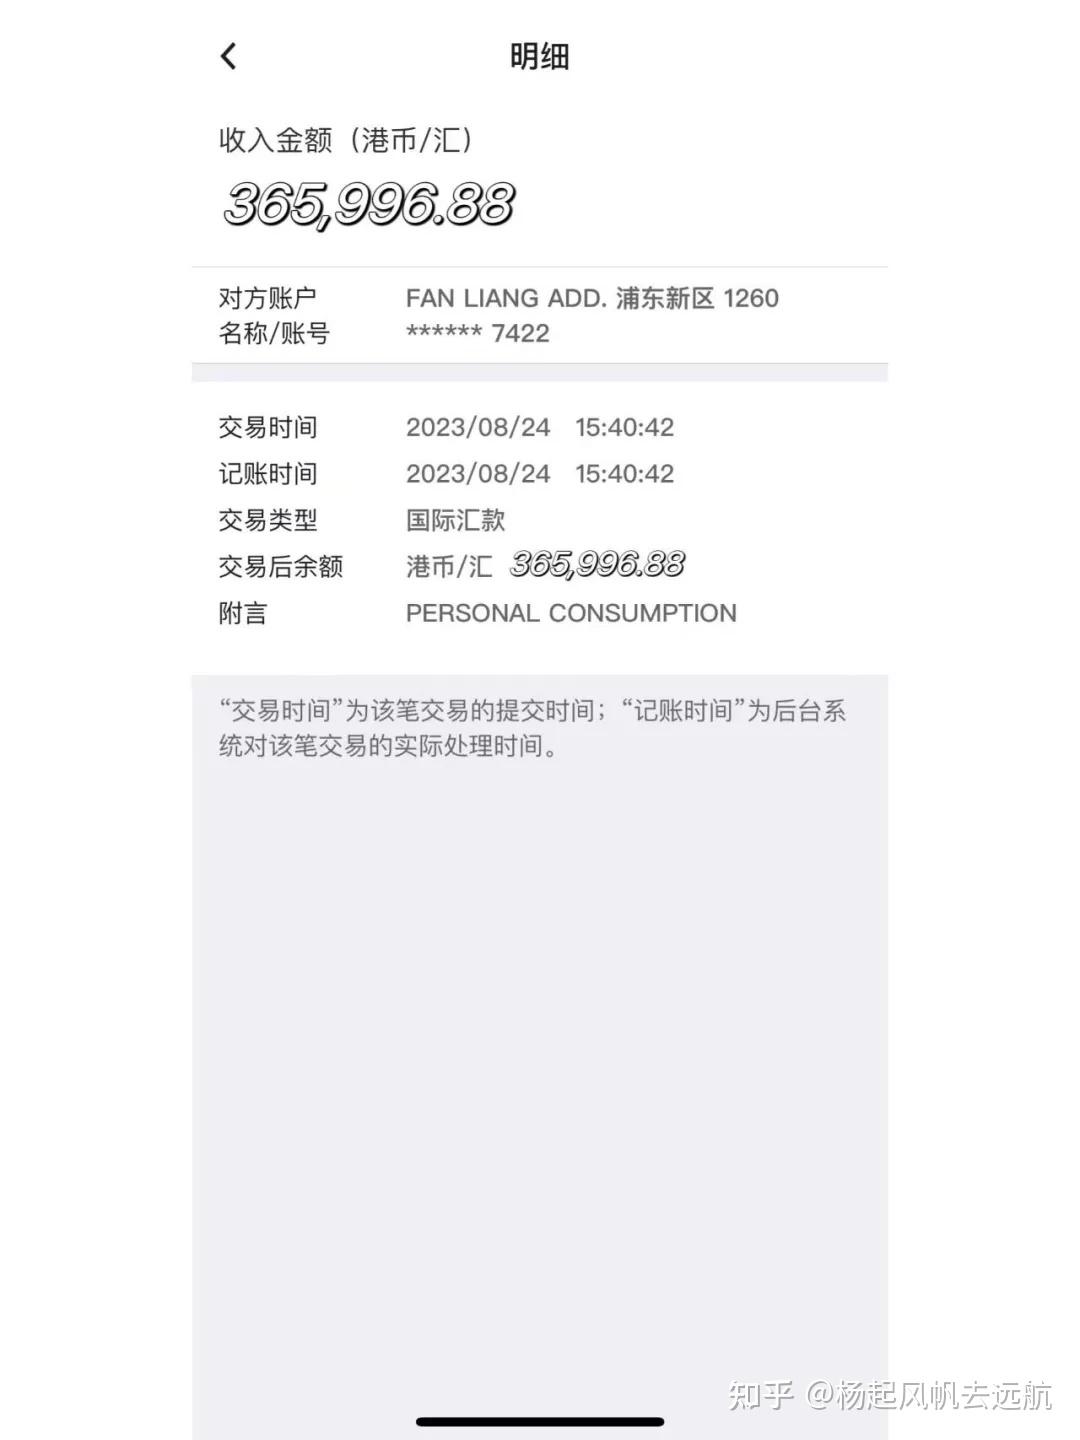 中国银行短信到账样本图片